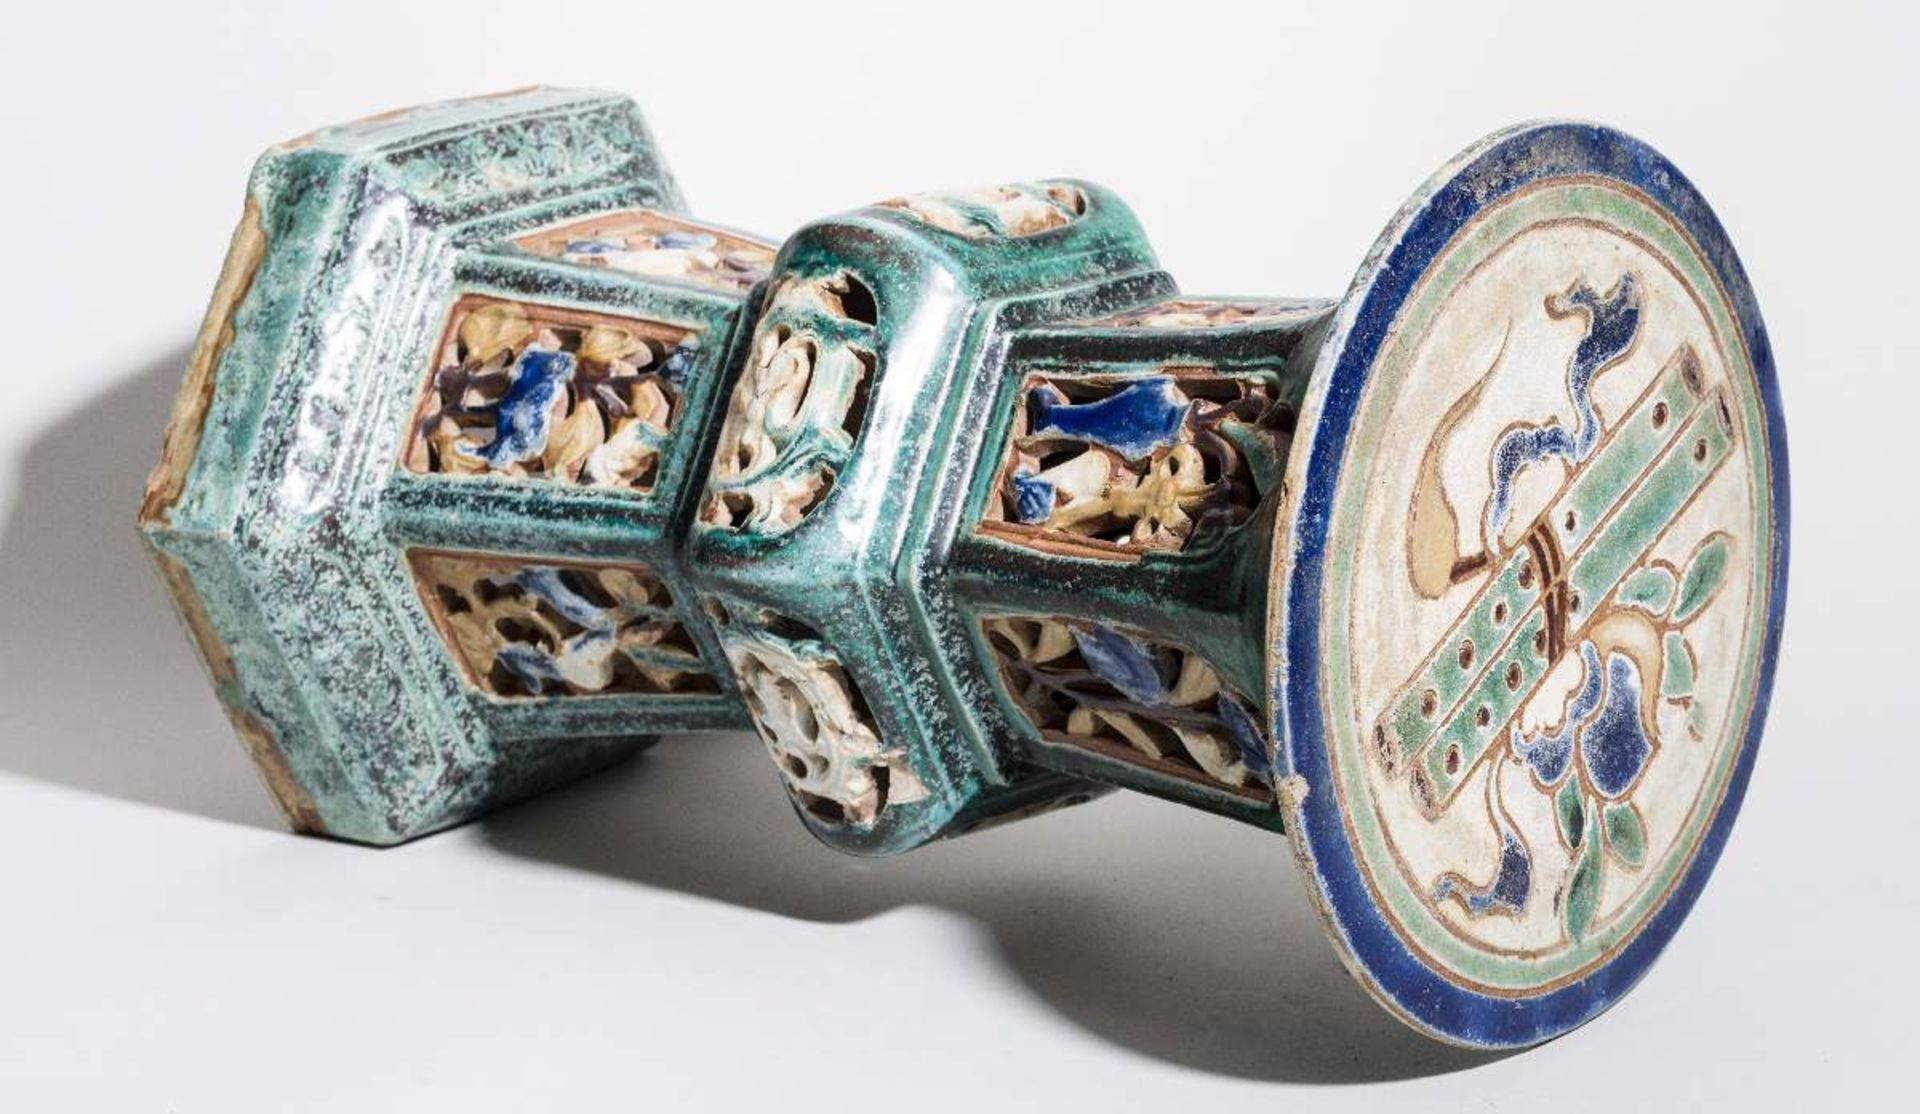 PAAR DEKORATIVE GARTENSÄULENFarbig glasierte Keramik. China, späte Qing-DynastieDie Form ist nach - Image 6 of 6